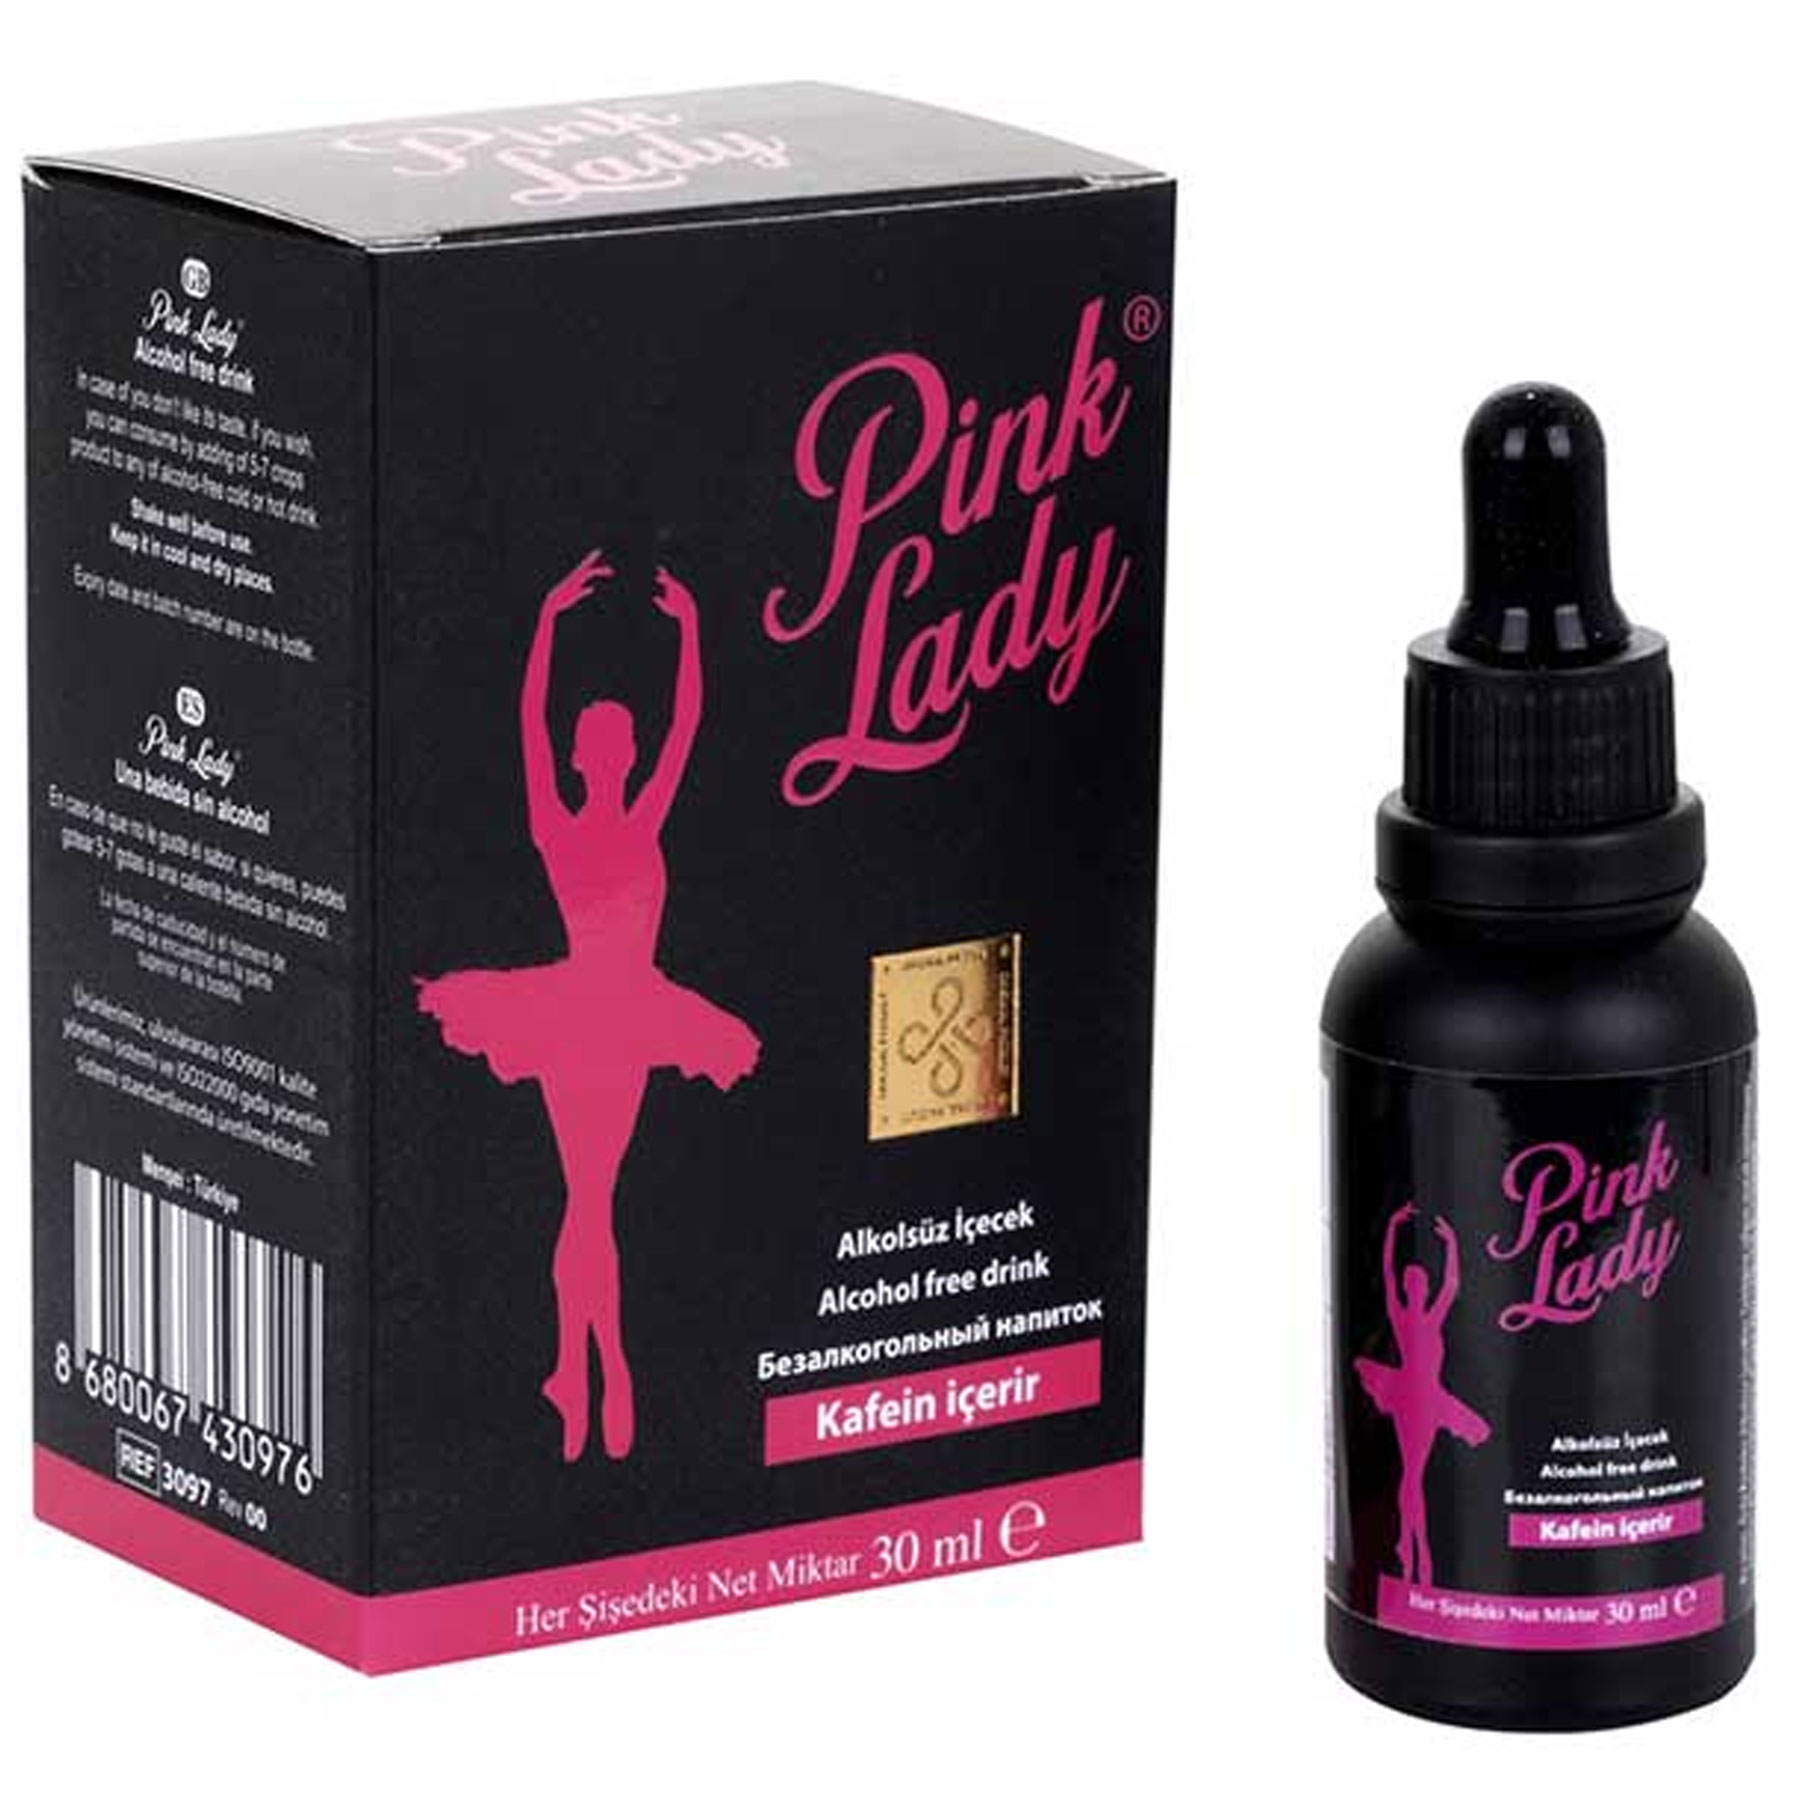 Pink Lady C-Y5112